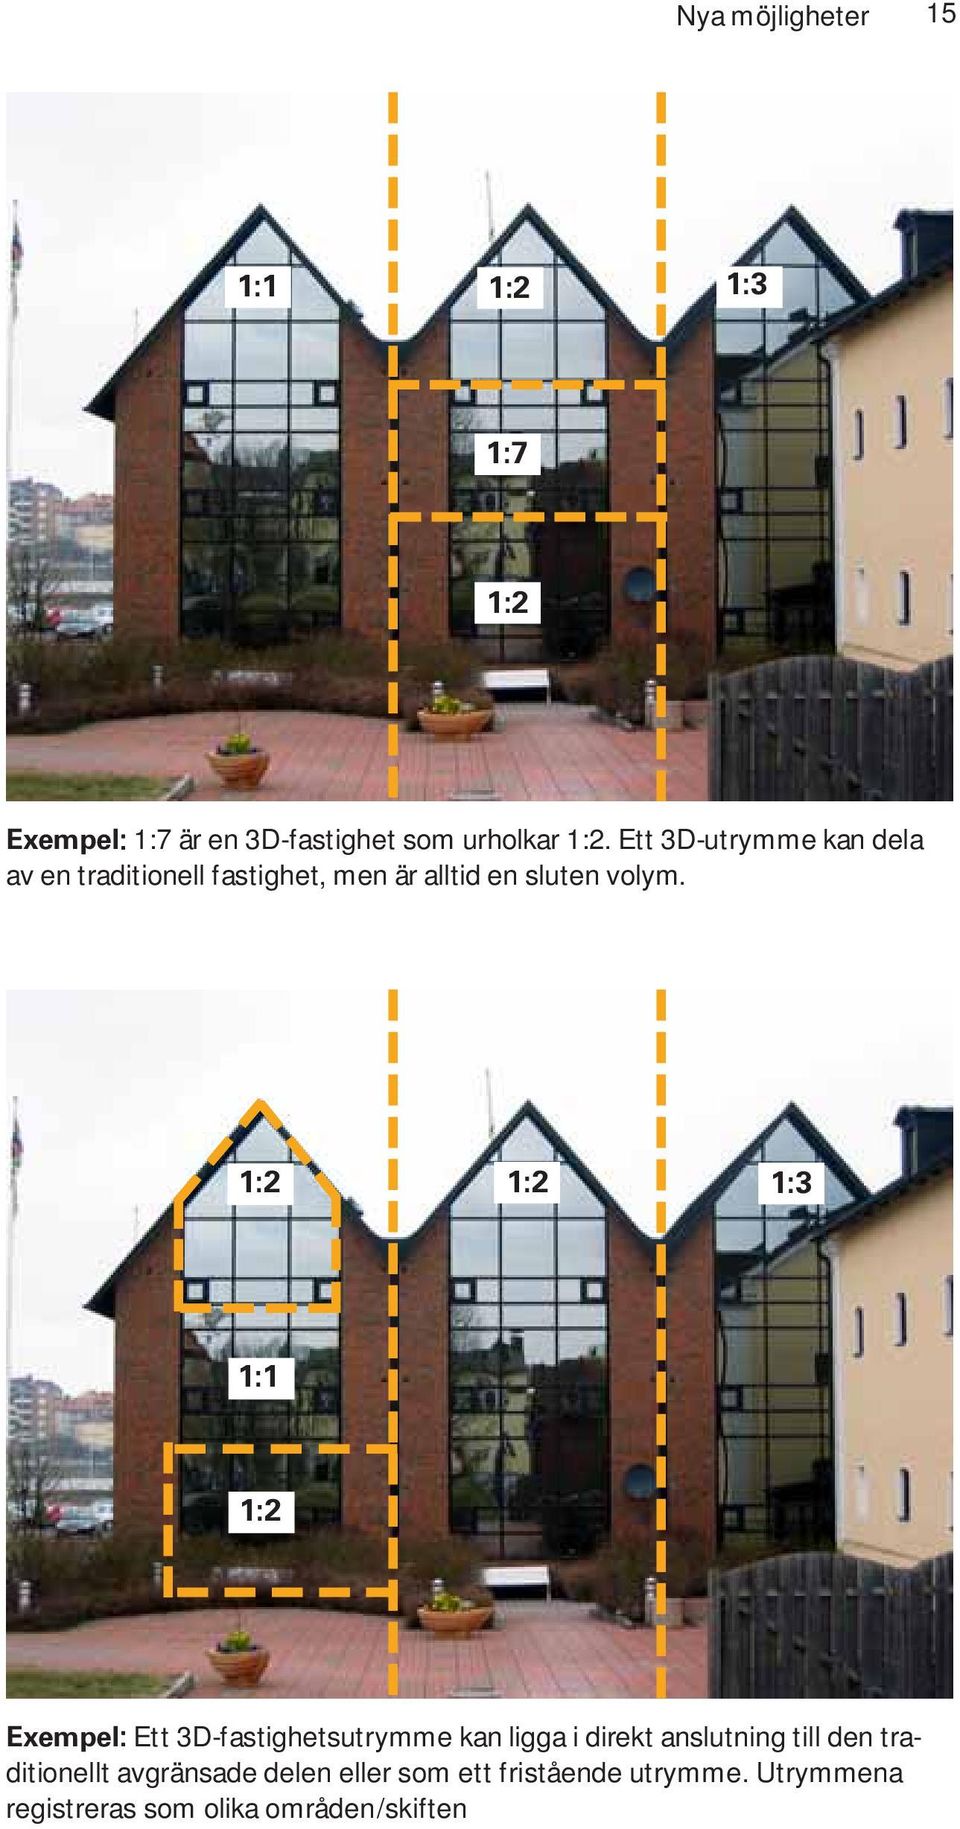 1:2 1:2 1:3 1:1 1:2 Exempel: Ett 3D-fastighetsutrymme kan ligga i direkt anslutning till den